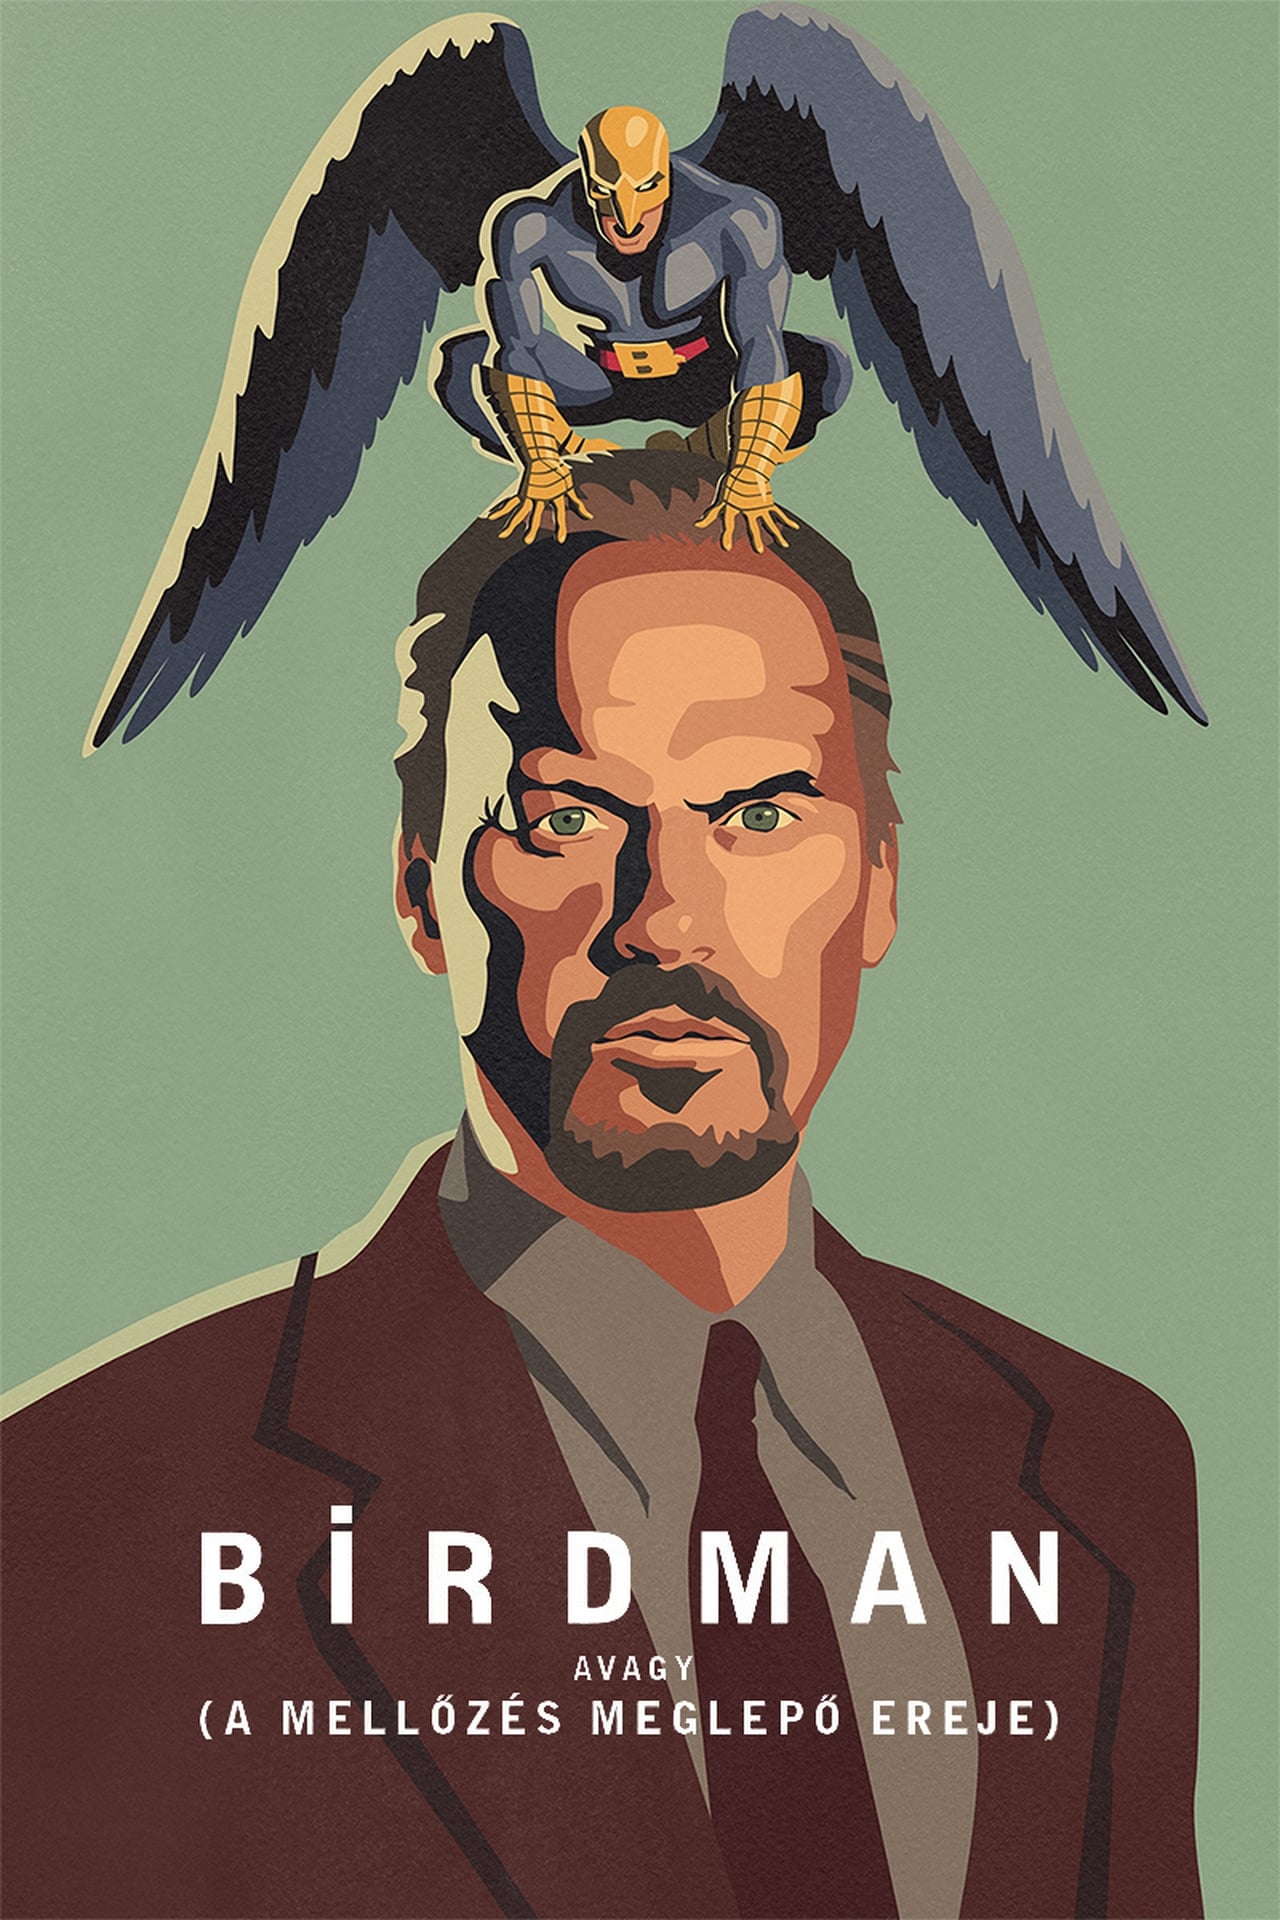 Birdman avagy (A mellőzés meglepő ereje) online teljes film (2014) 